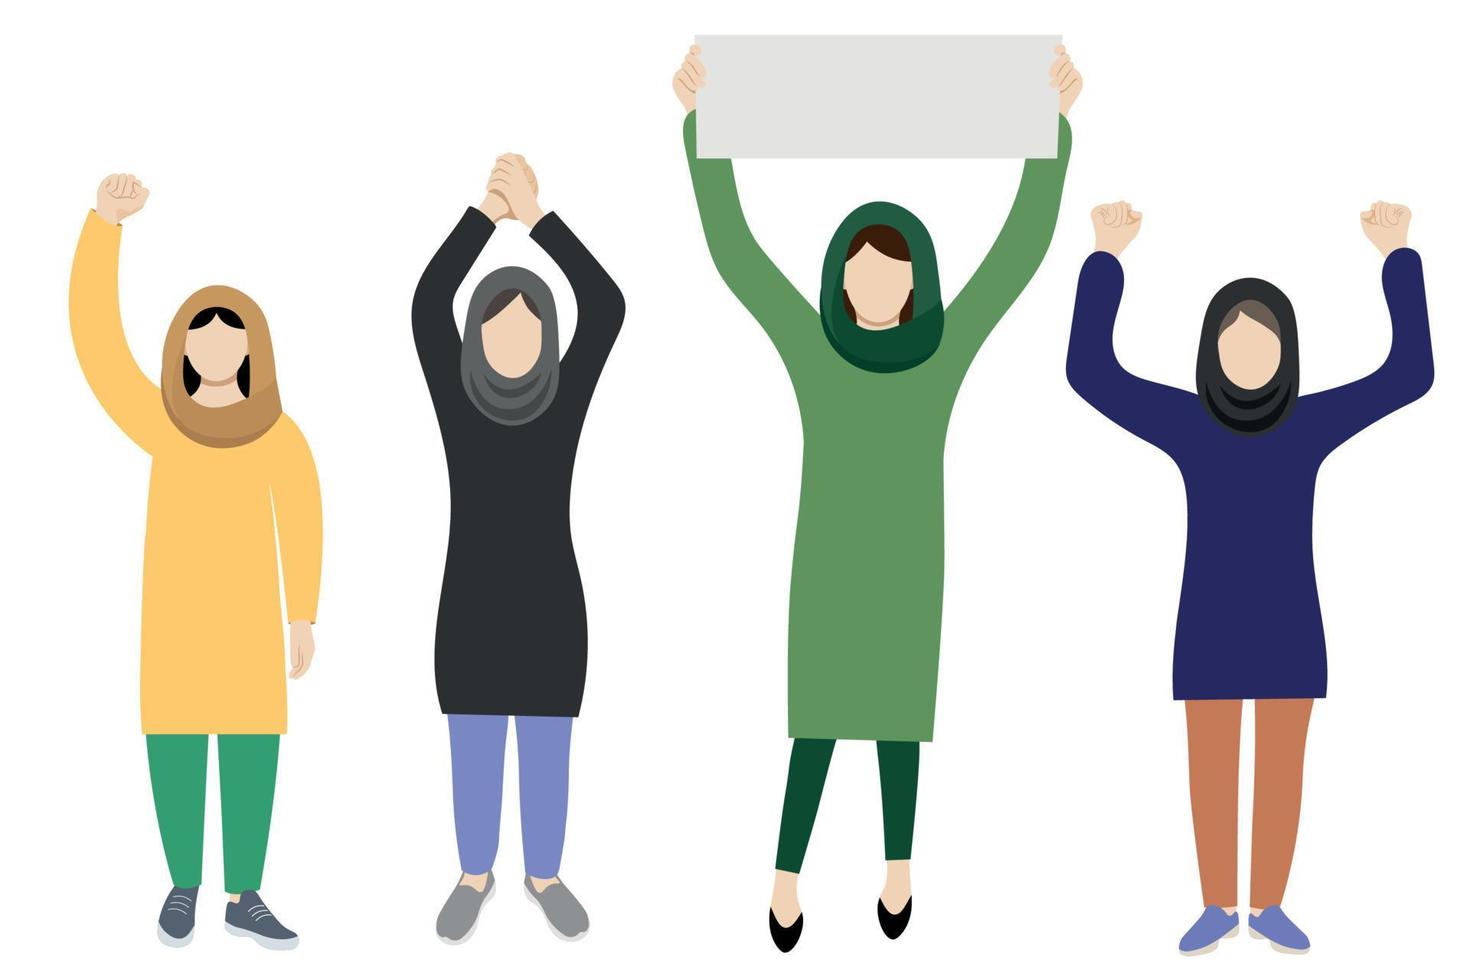 retratos de corpo inteiro de mulheres com lenços na cabeça com os braços levantados acima de suas cabeças, vetor plano, isolado no fundo branco, ilustração sem rosto, protestos iranianos, mulheres iranianas